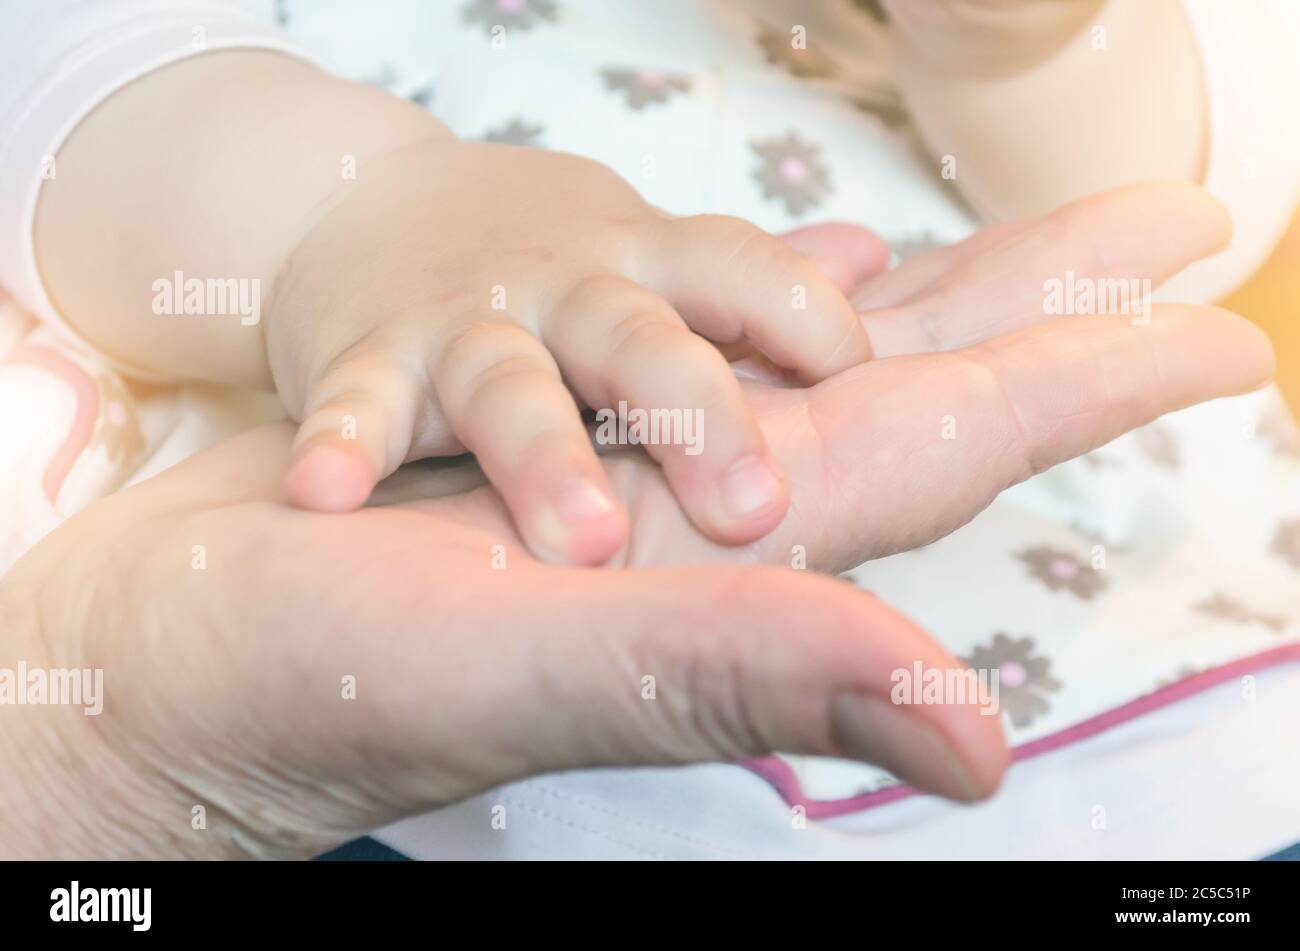 Kinderhand eines Babys auf der Hand einer erwachsenen Person. Konzept der Beziehung von Großmutter und Enkelkindern Stockfoto